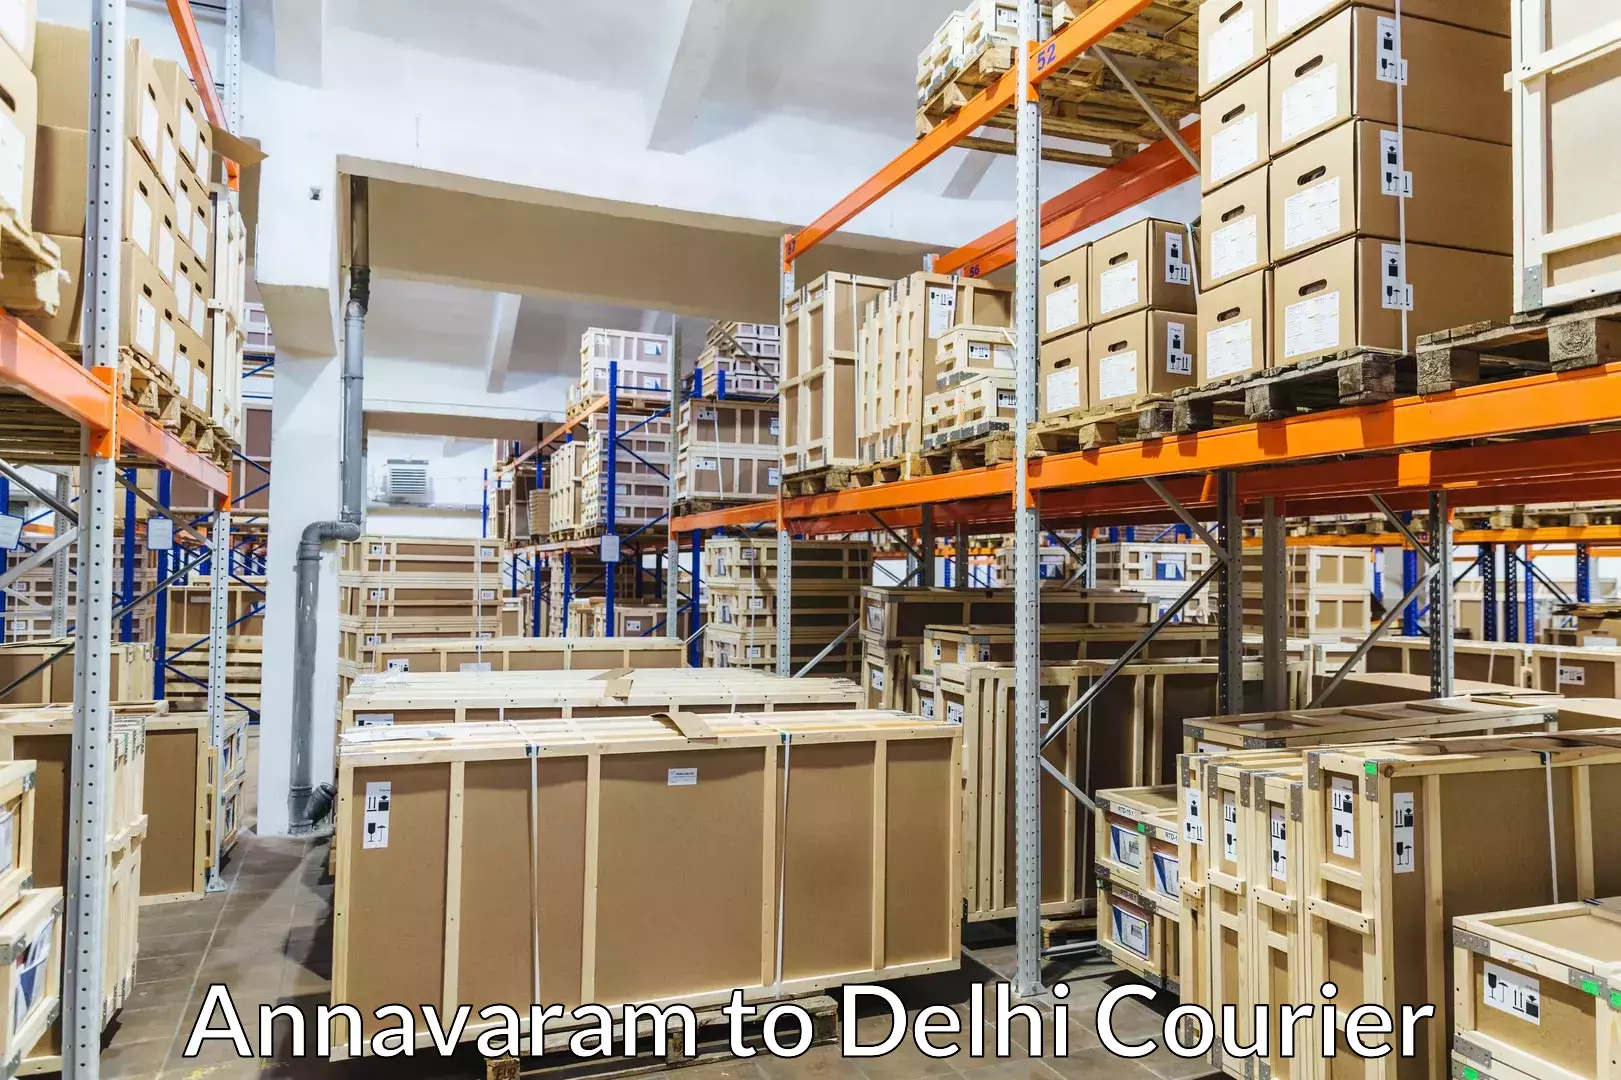 Moving and packing experts Annavaram to Burari